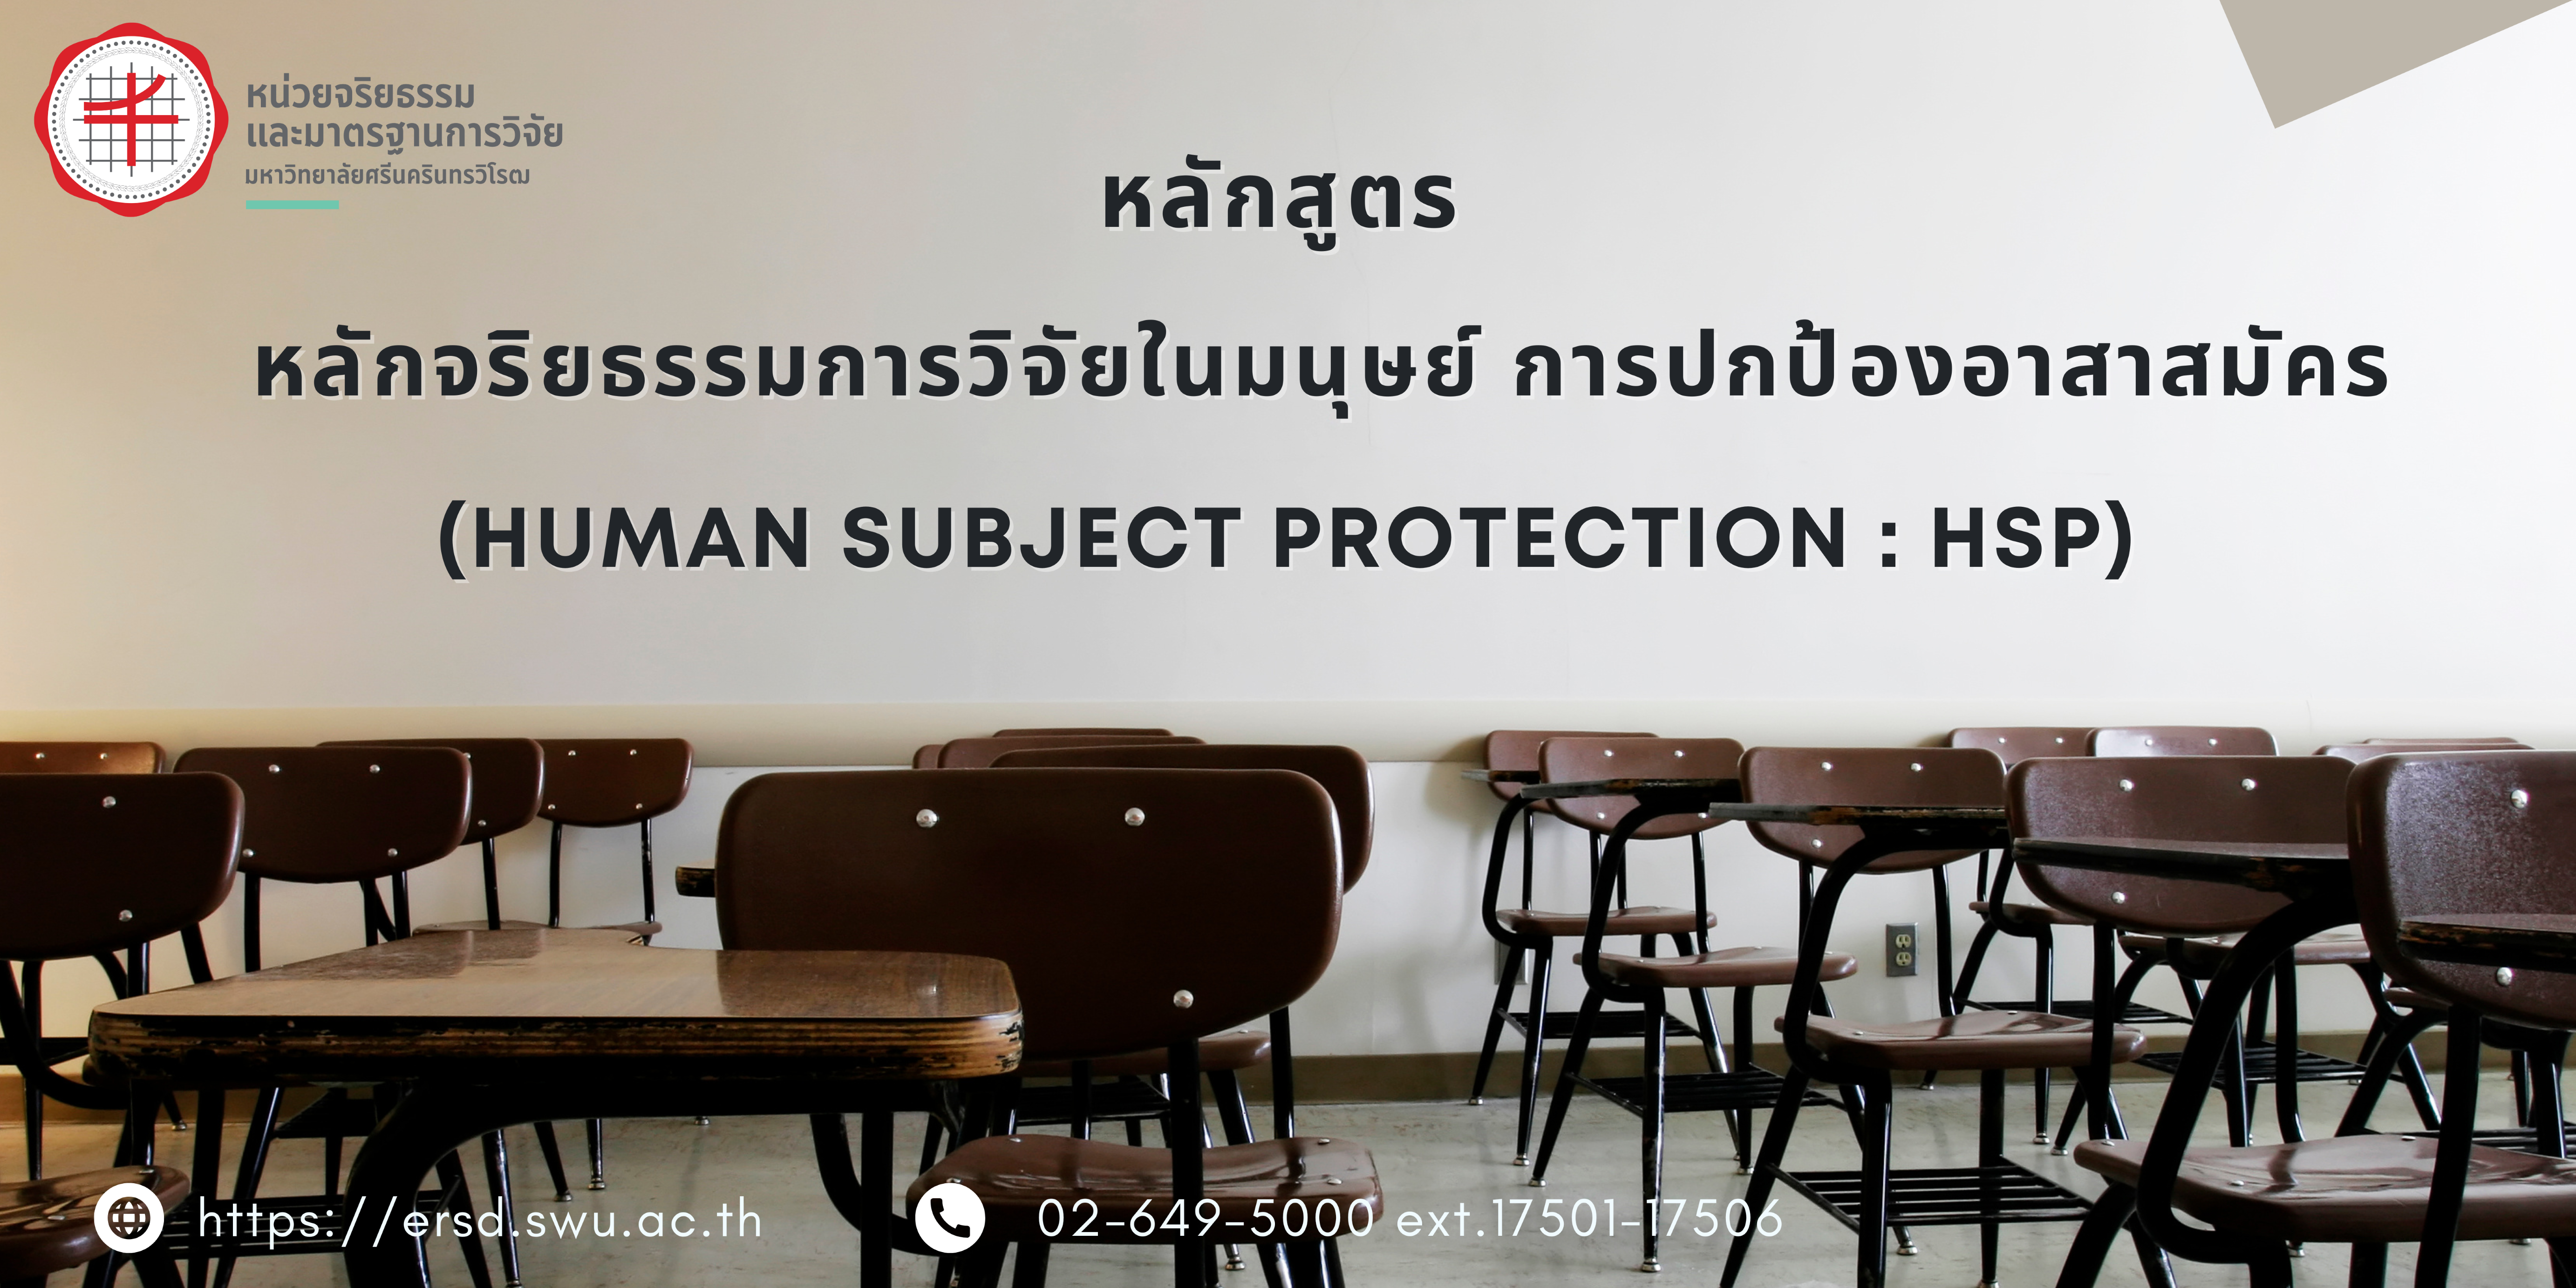 SWU EC: หลักจริยธรรมการวิจัยในมนุษย์ หลักสูตรการปกป้องอาสาสมัคร (Human Subject Protection : HSP)